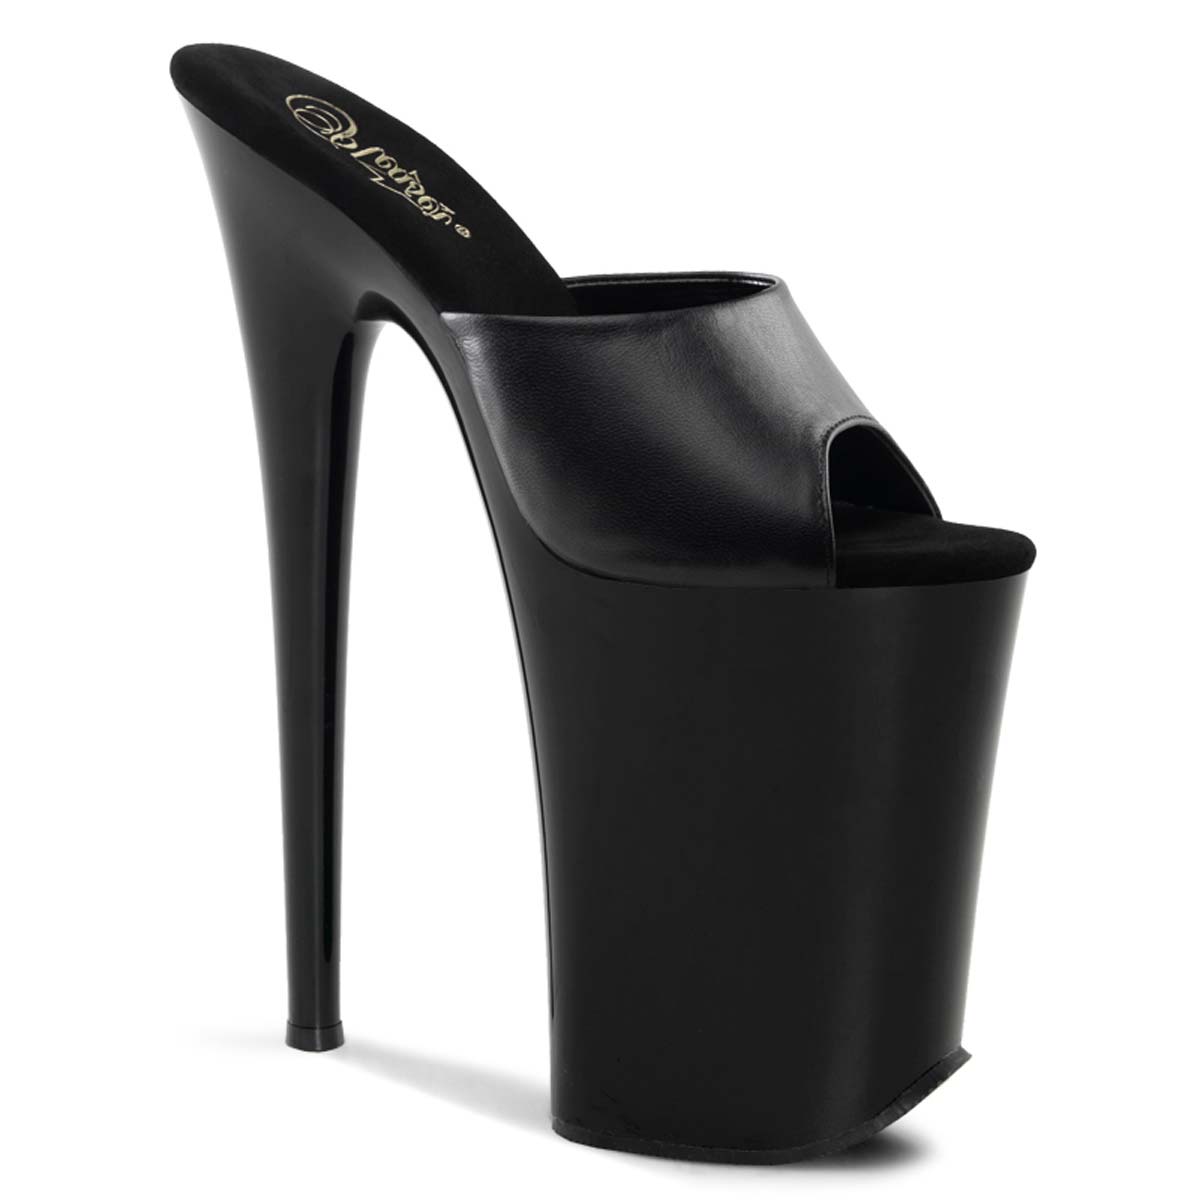 heels 9 inch